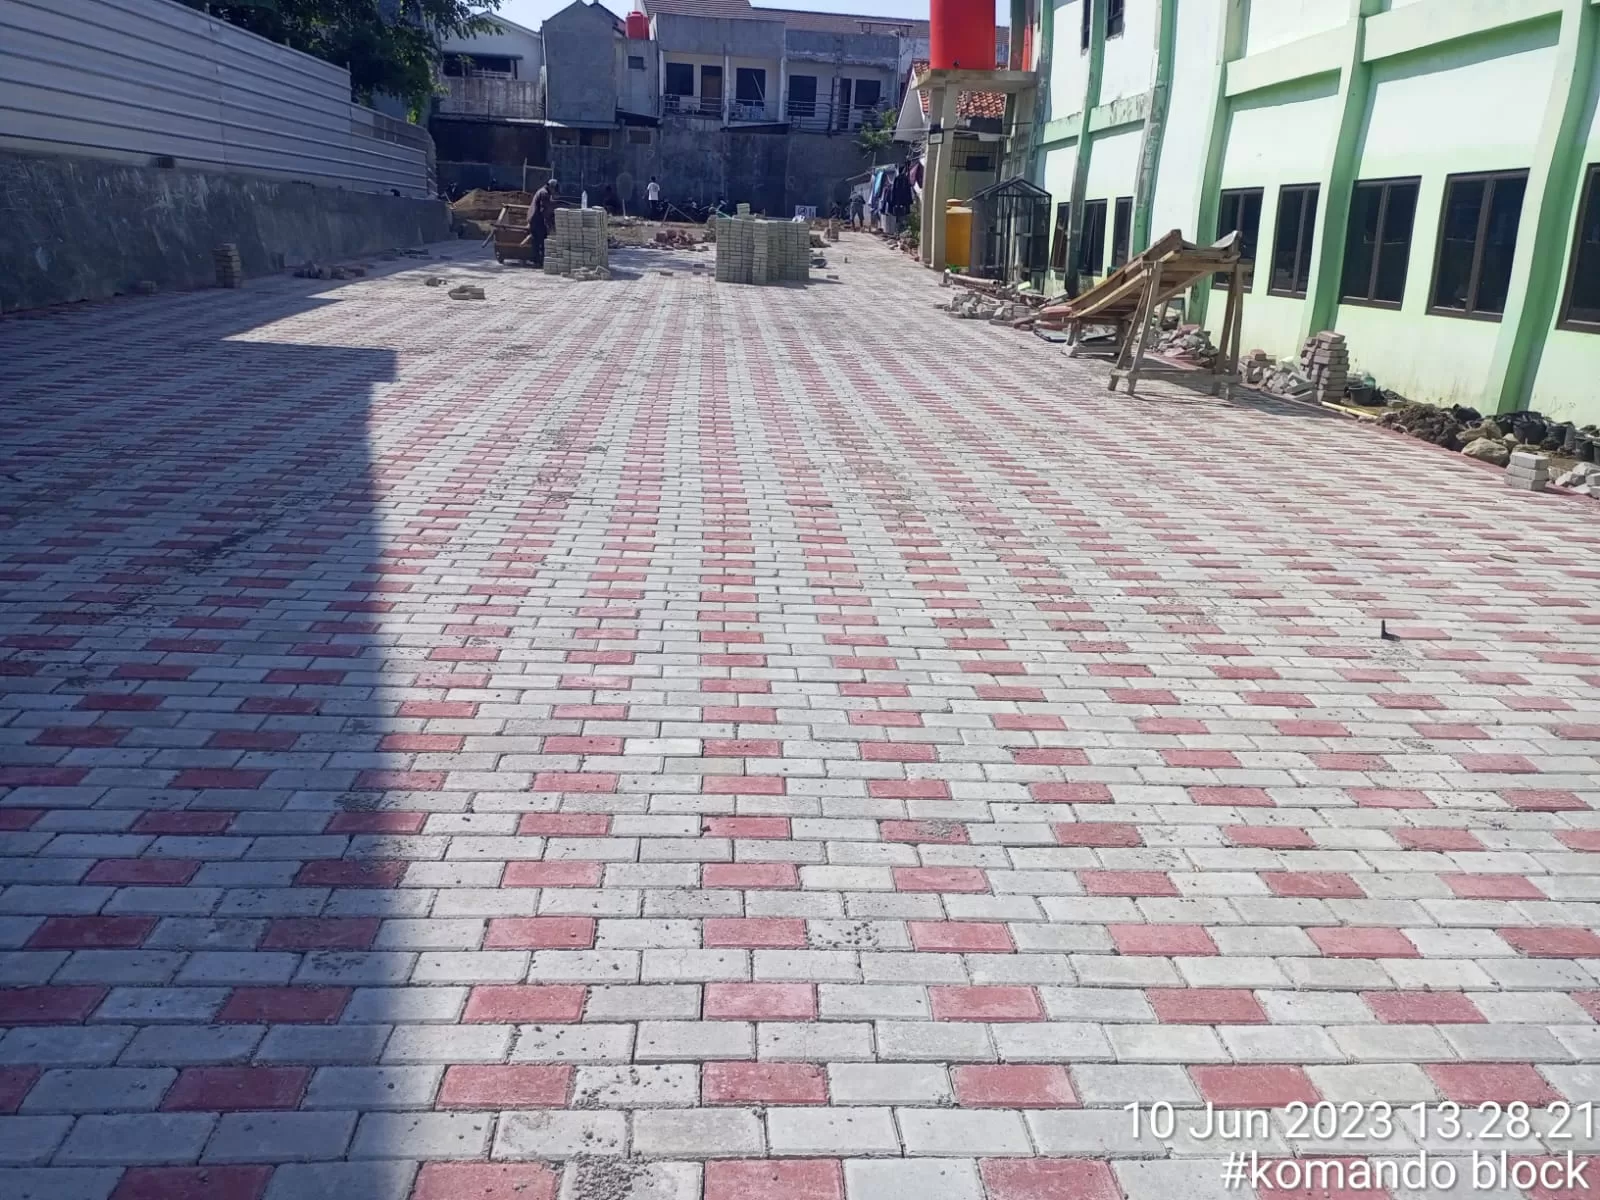 ongkos pasang paving block per m2